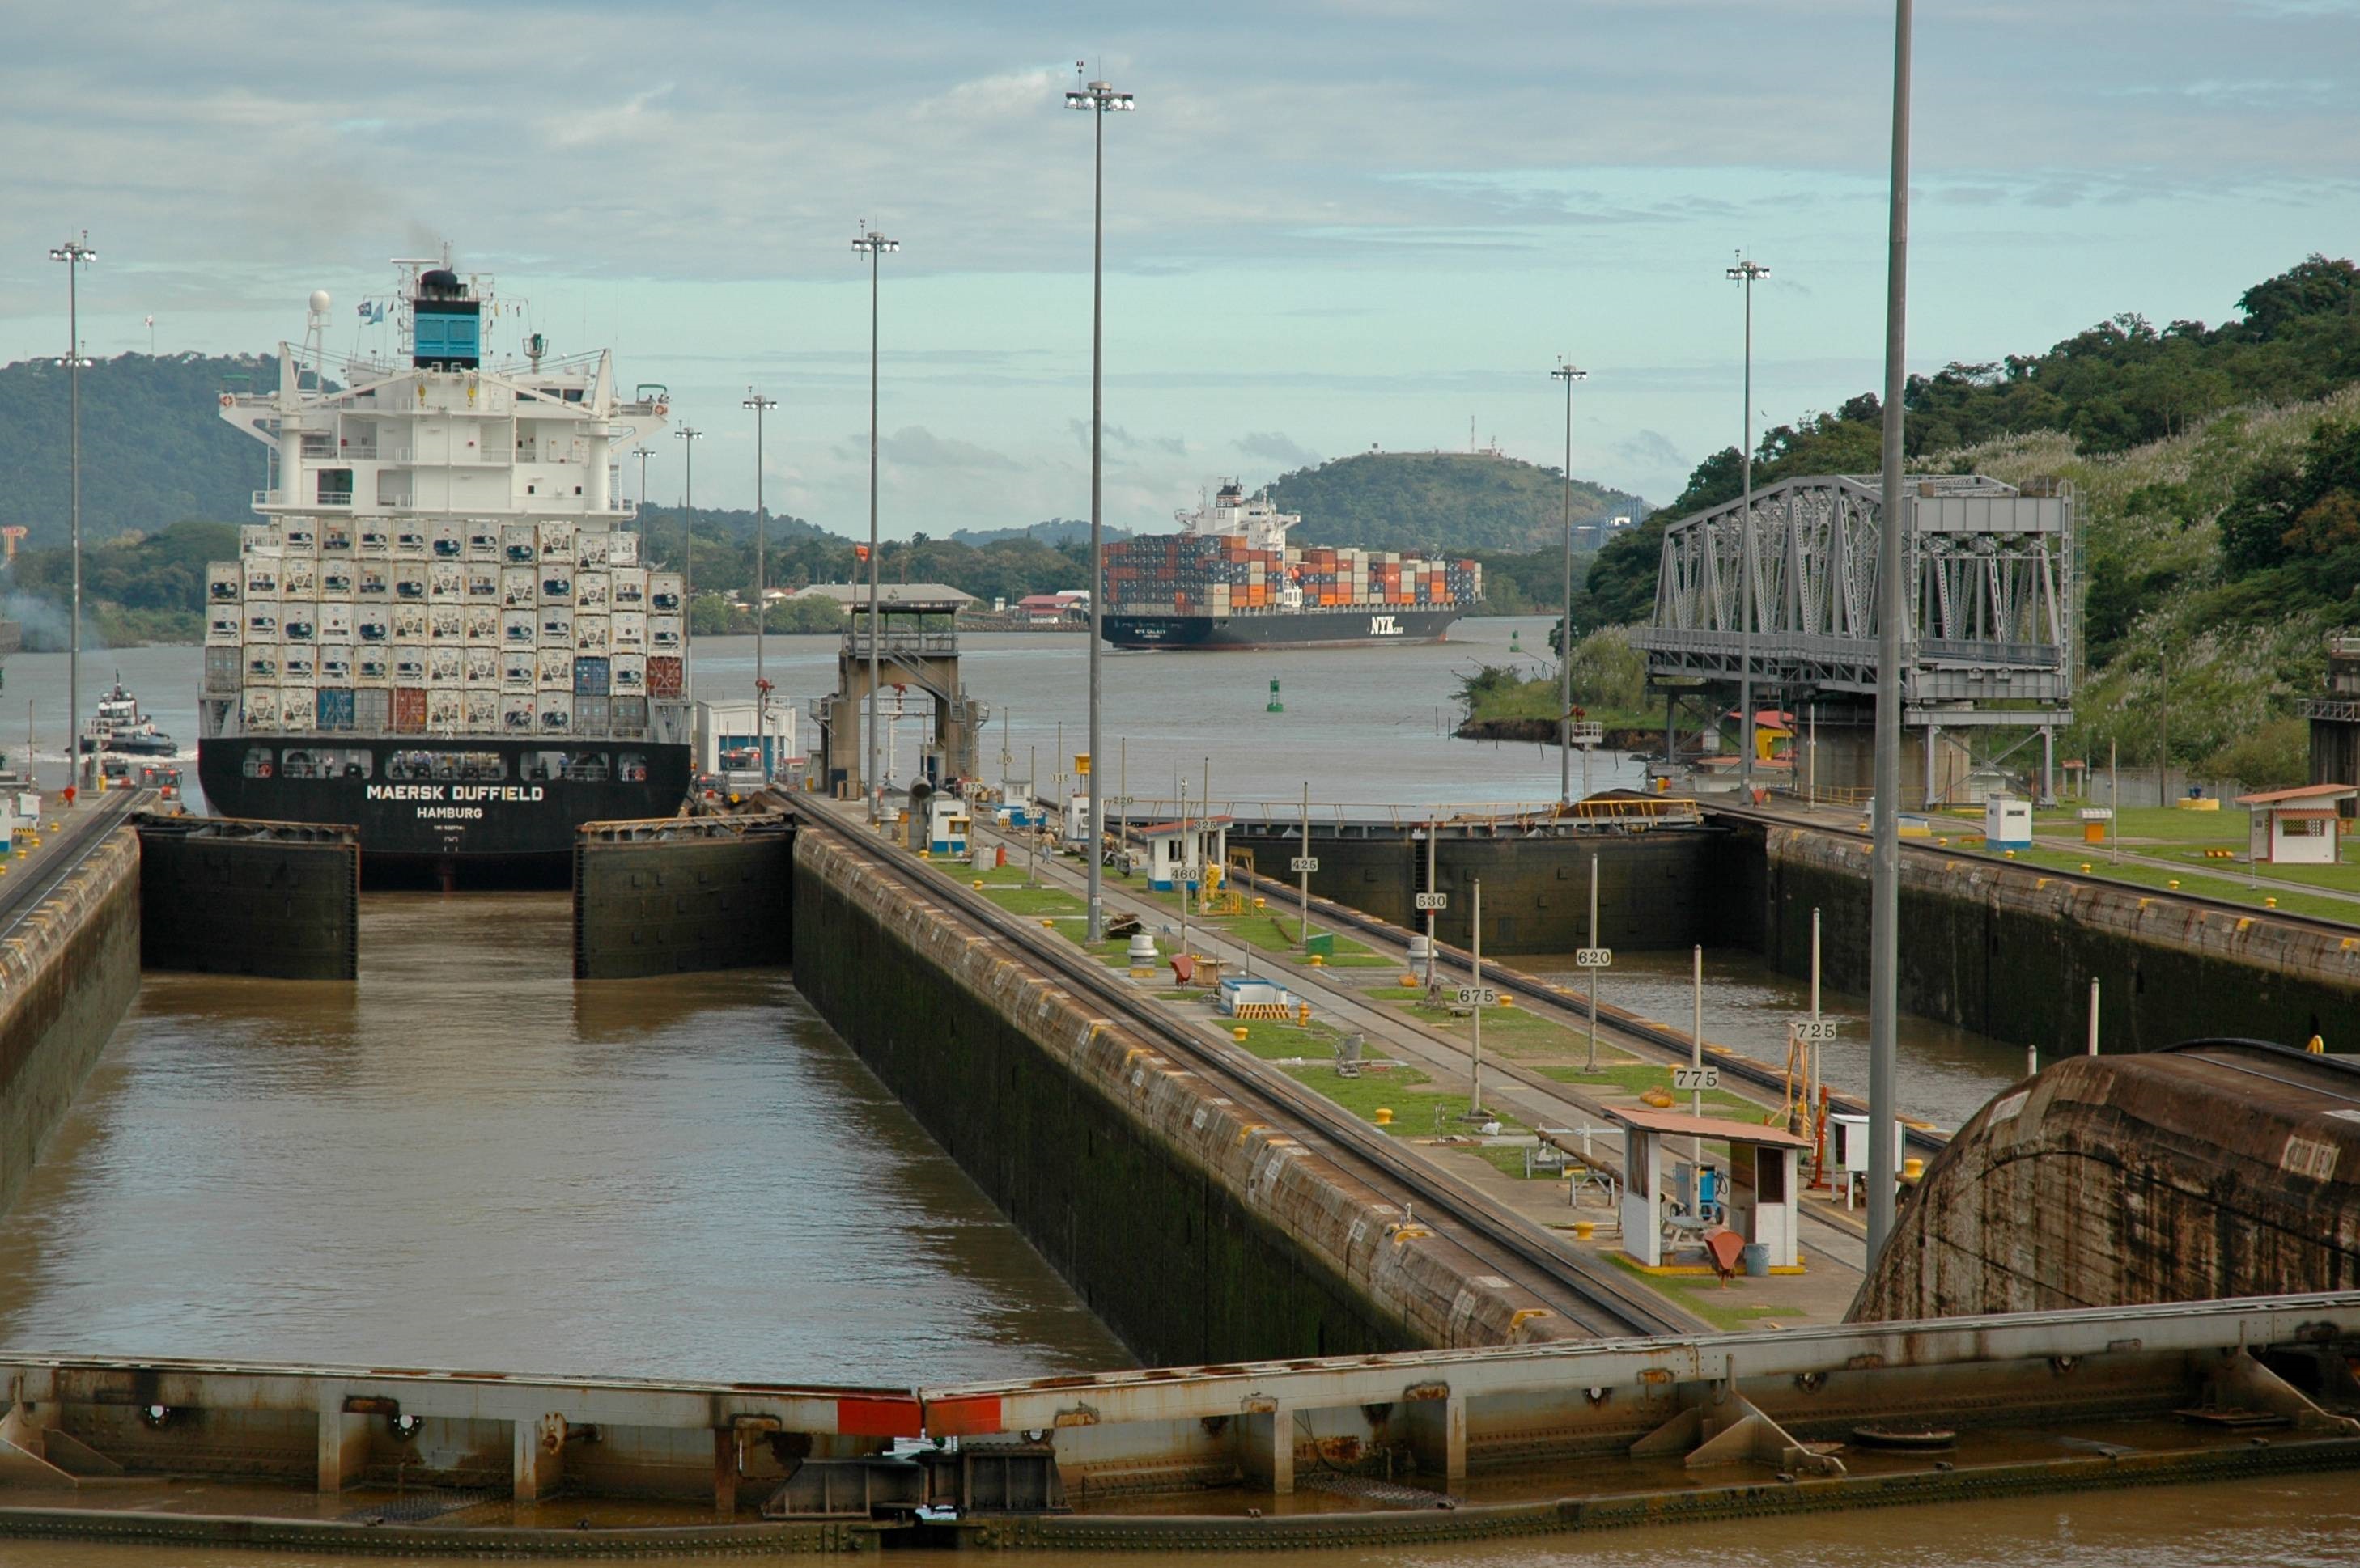 کانال پاناما افزایش نرخ ترانزیت را به تأخیر انداخت